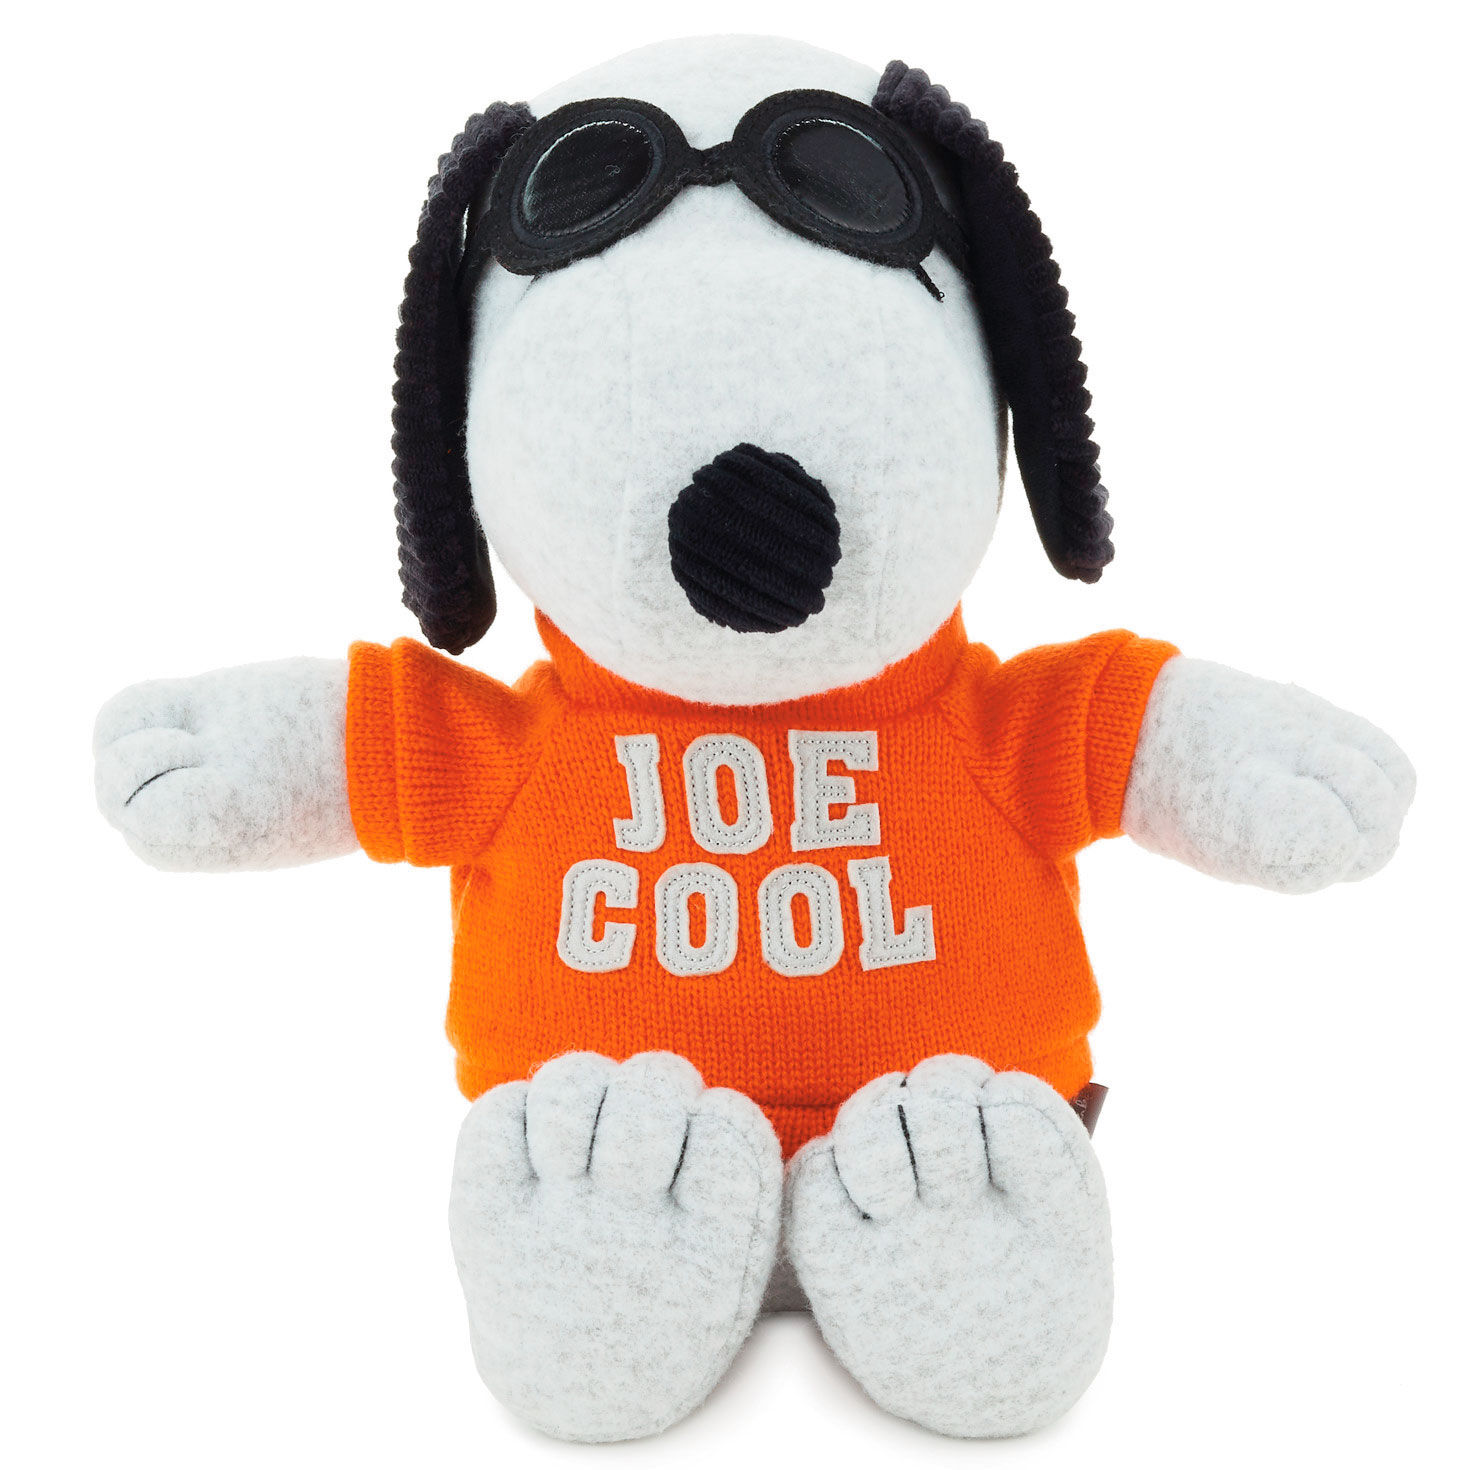 Peanuts Joe Cool Snoopy Stuffed Animal, 12